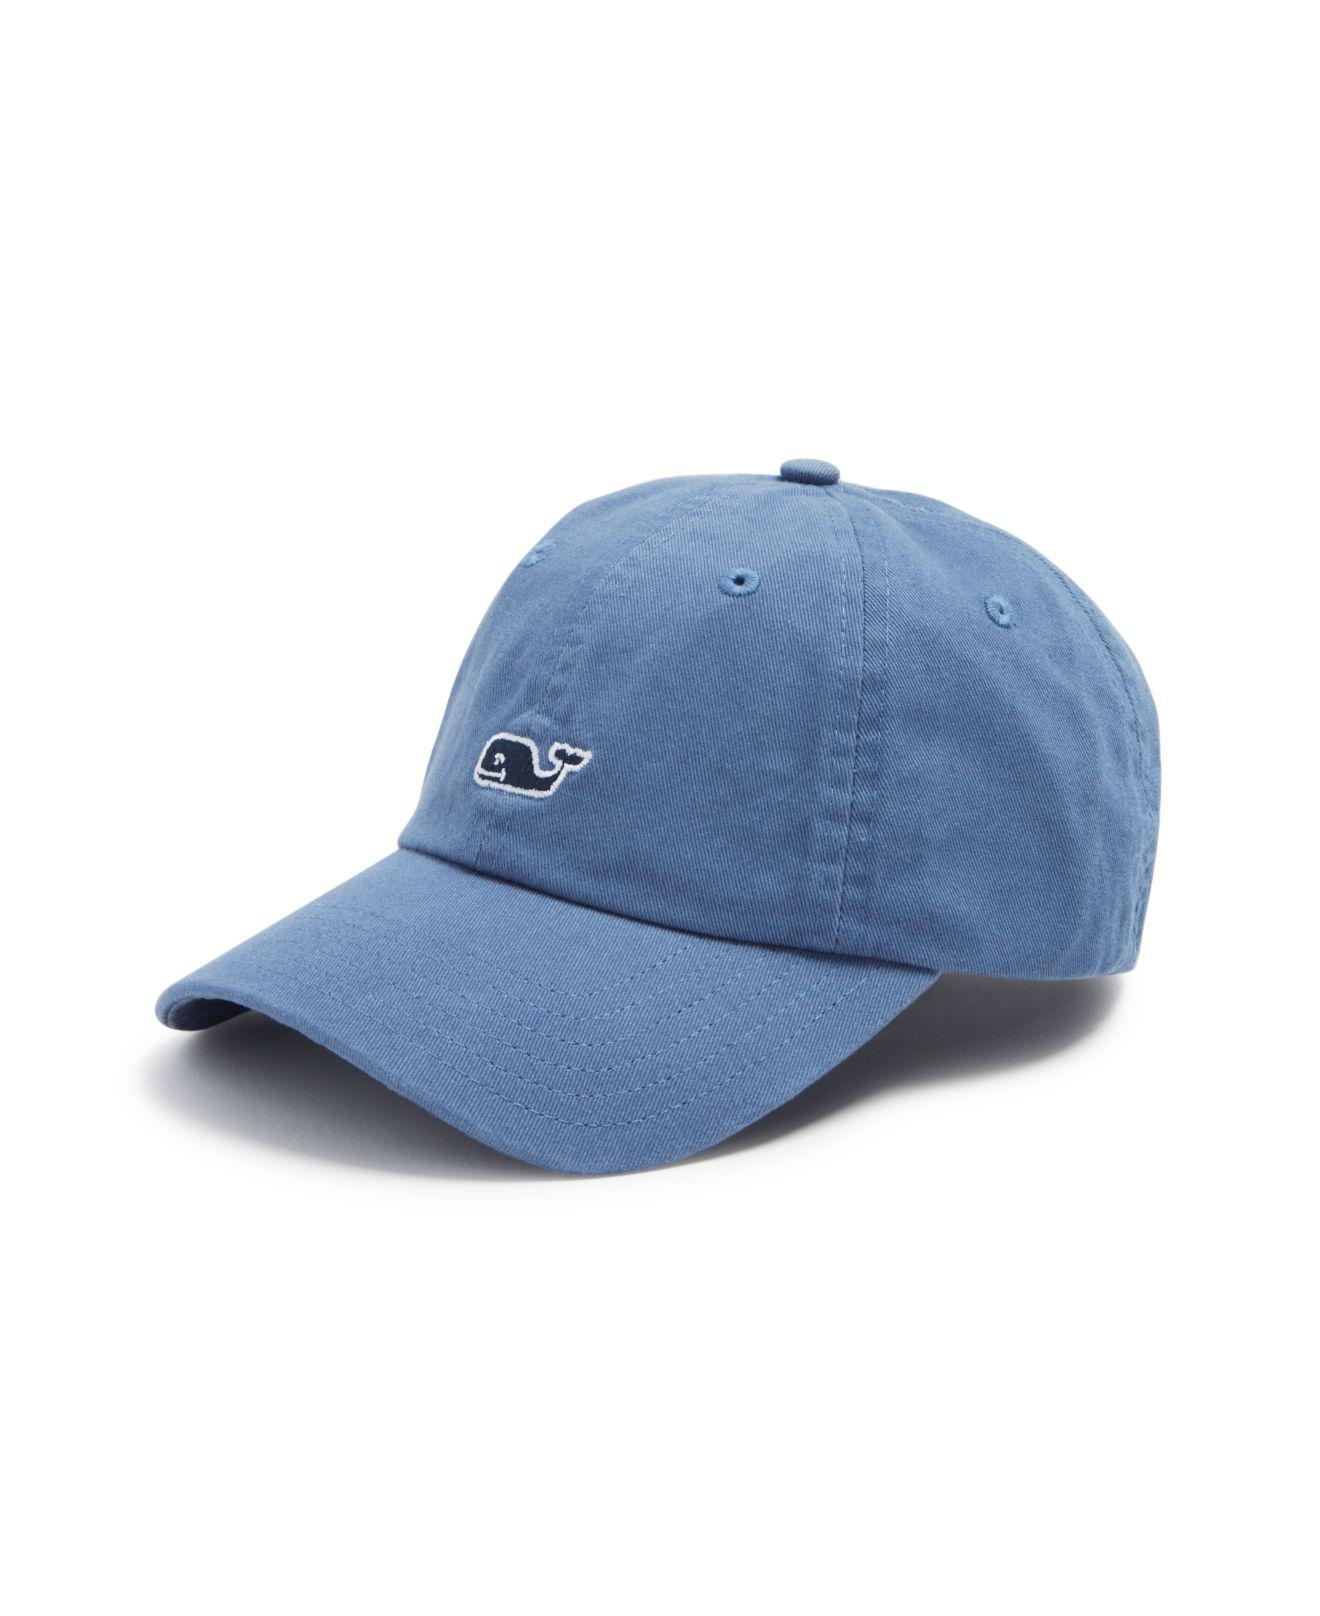 Vineyard Vines Classic Baseball Cap in Slate Blue (Blue) for Men - Lyst